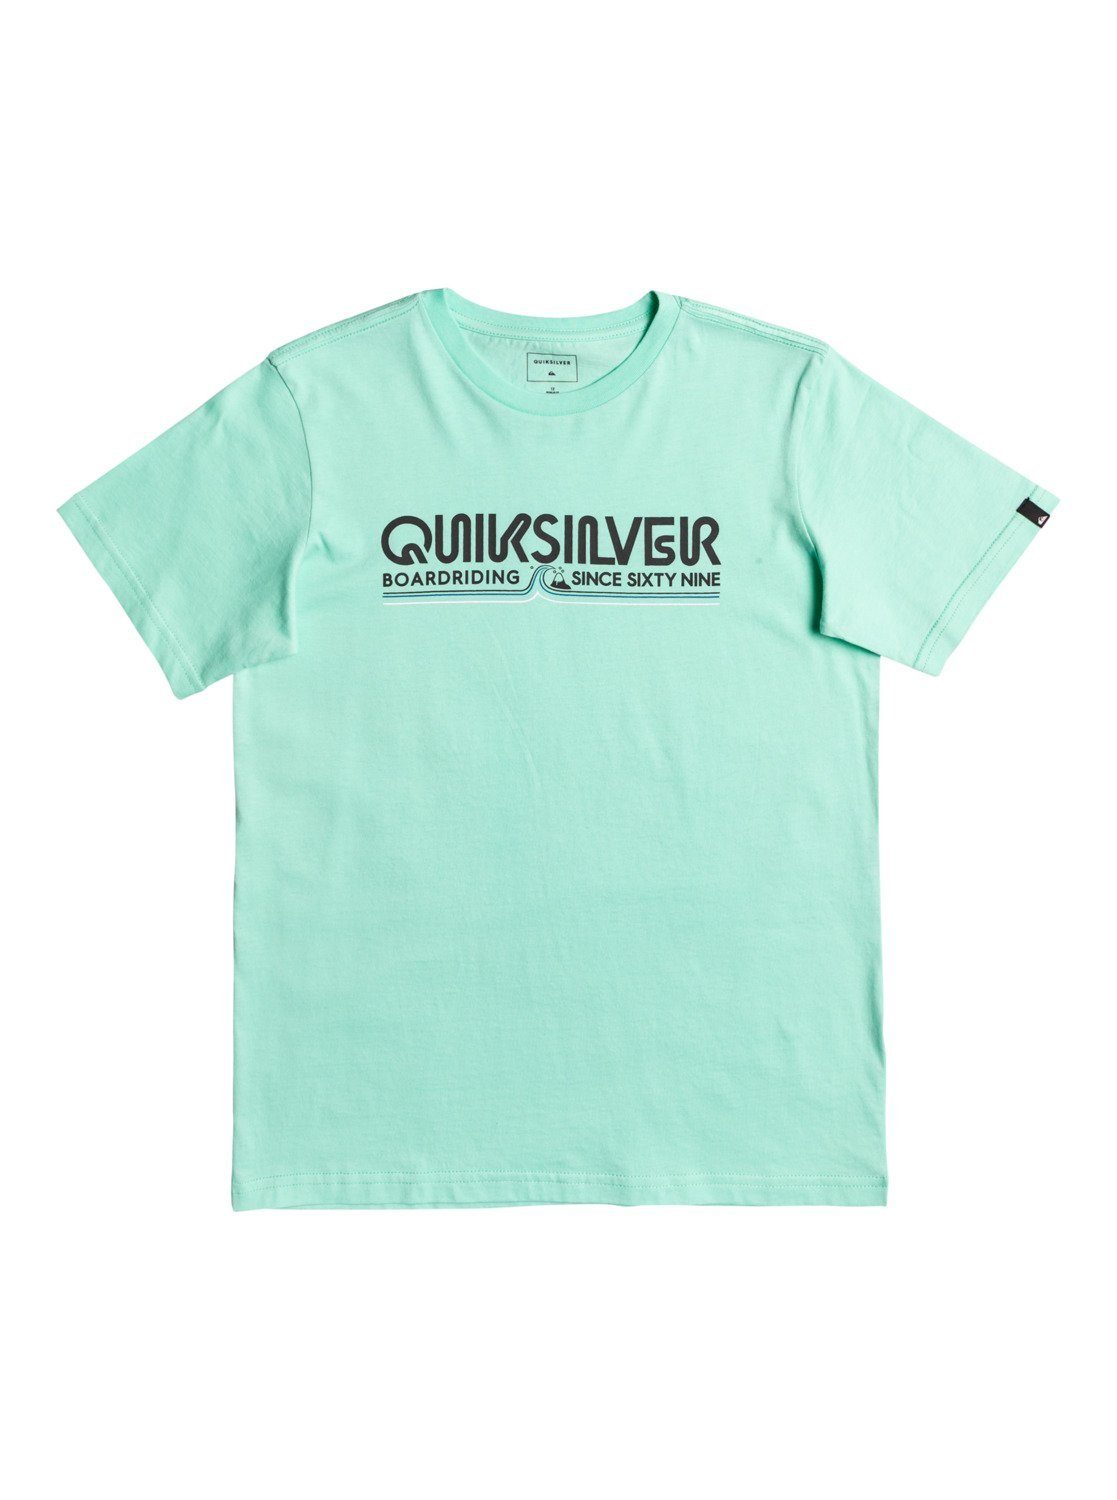 Quiksilver T-Shirt Like Gold